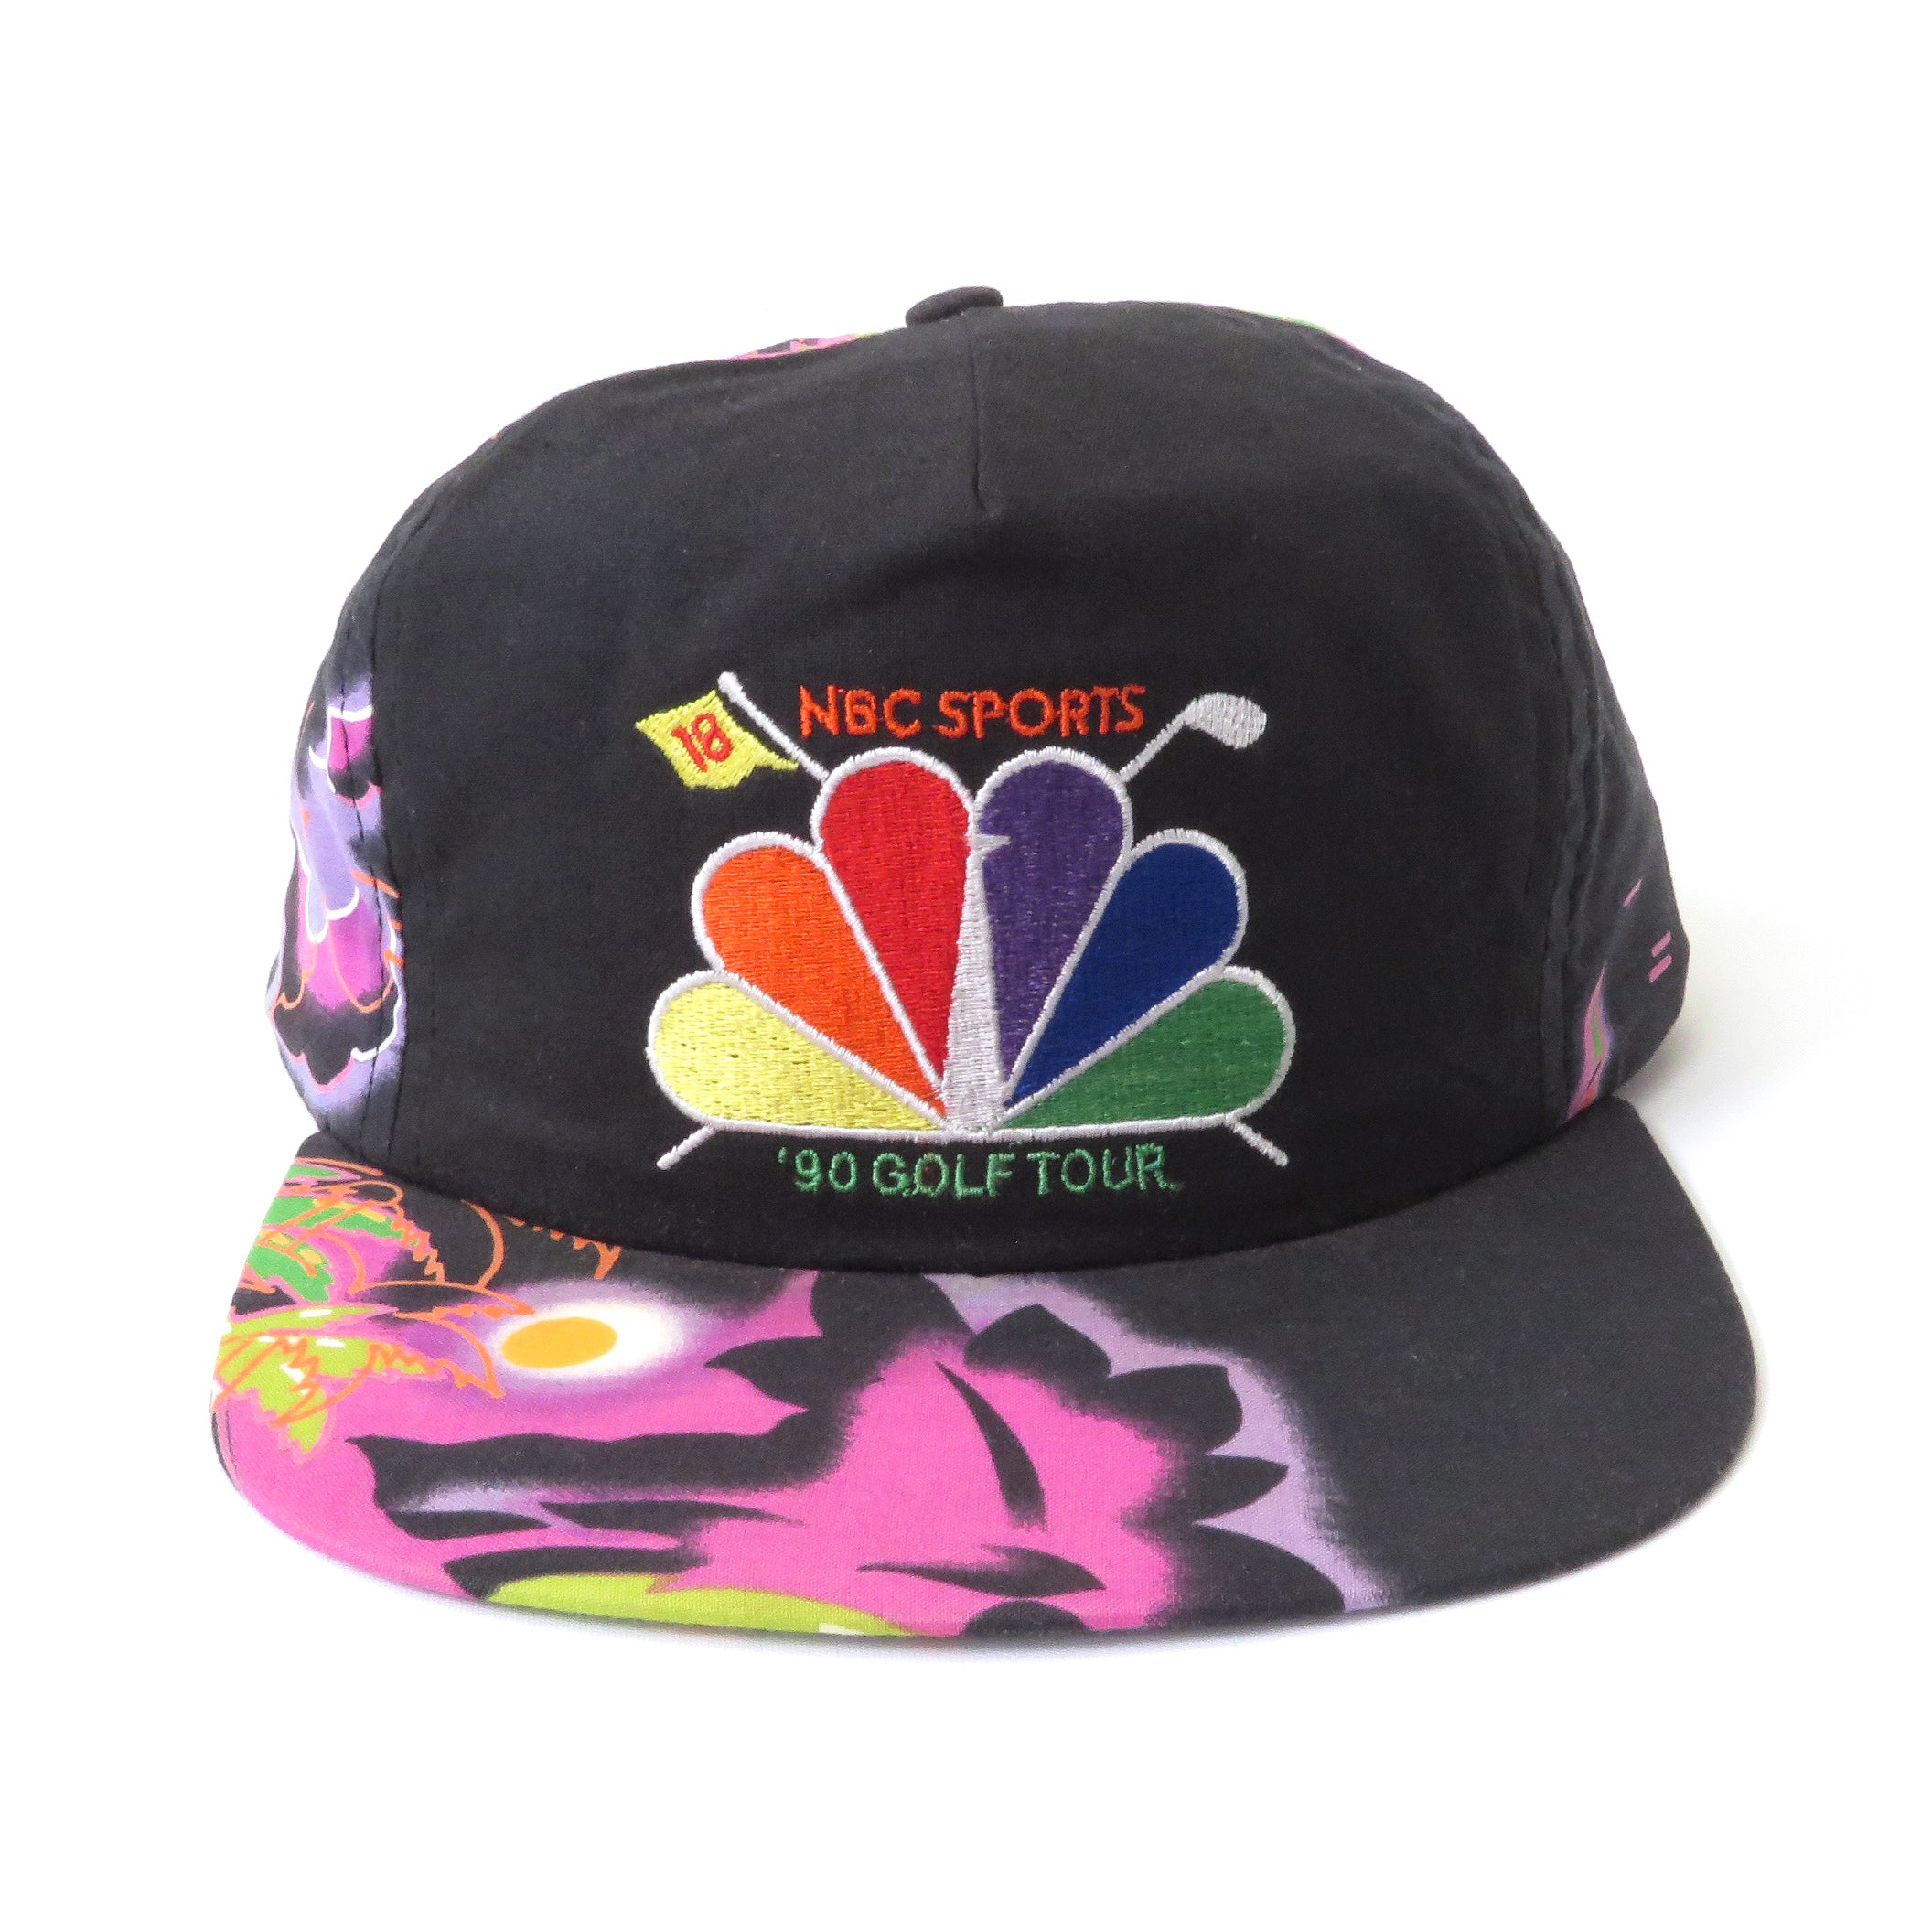 Vintage 1990 NBC Sports Golf Tour Floral Strapback Hat